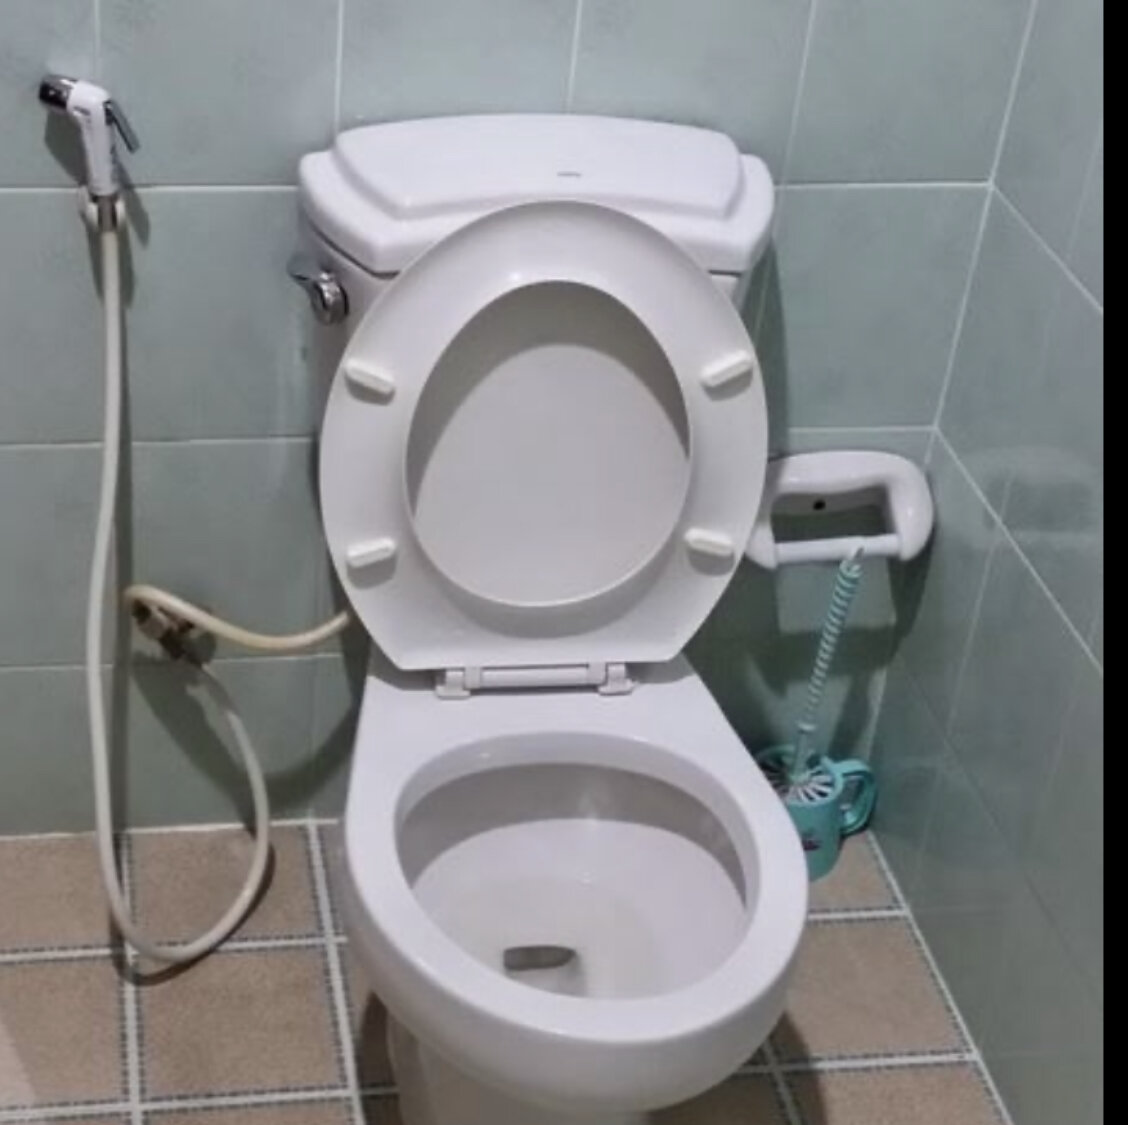 Зачем тайцы массово скупают туалетную бумагу, если ею не пользуются